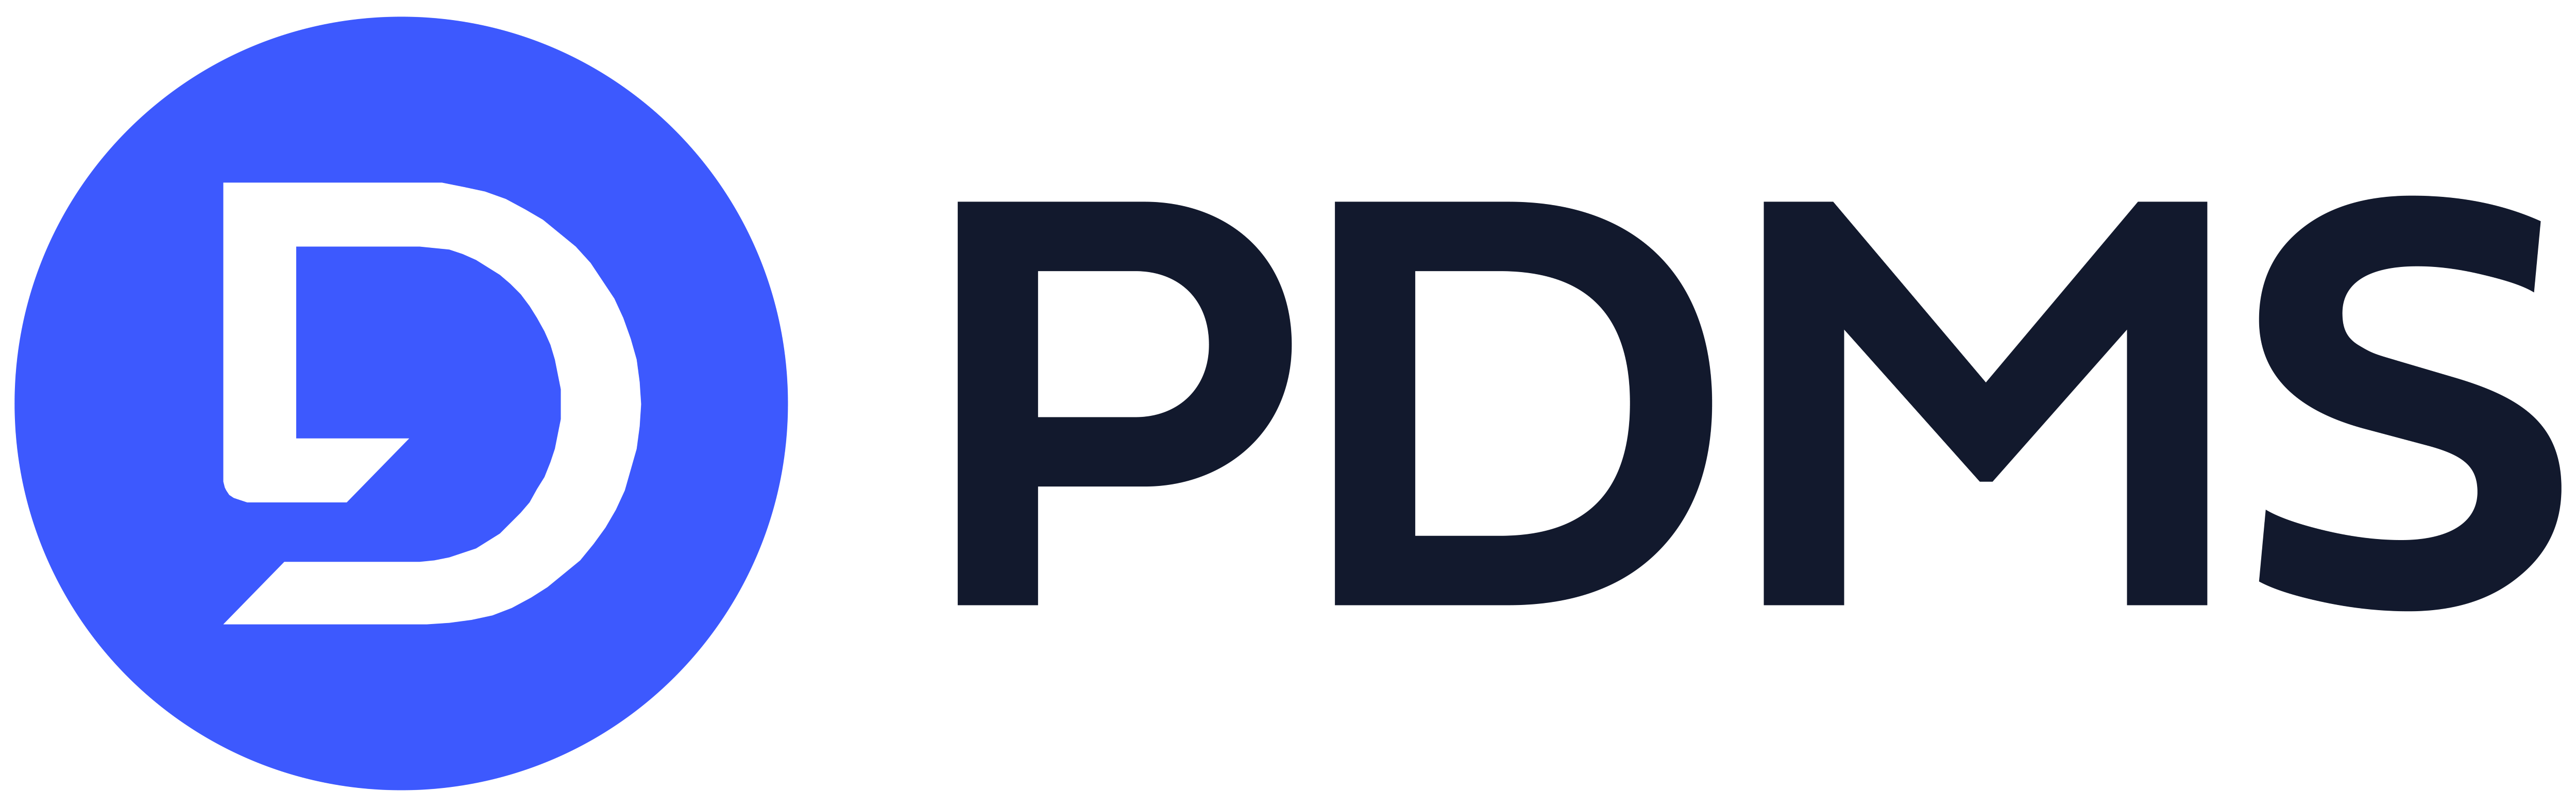 logo for PDMS Ltd